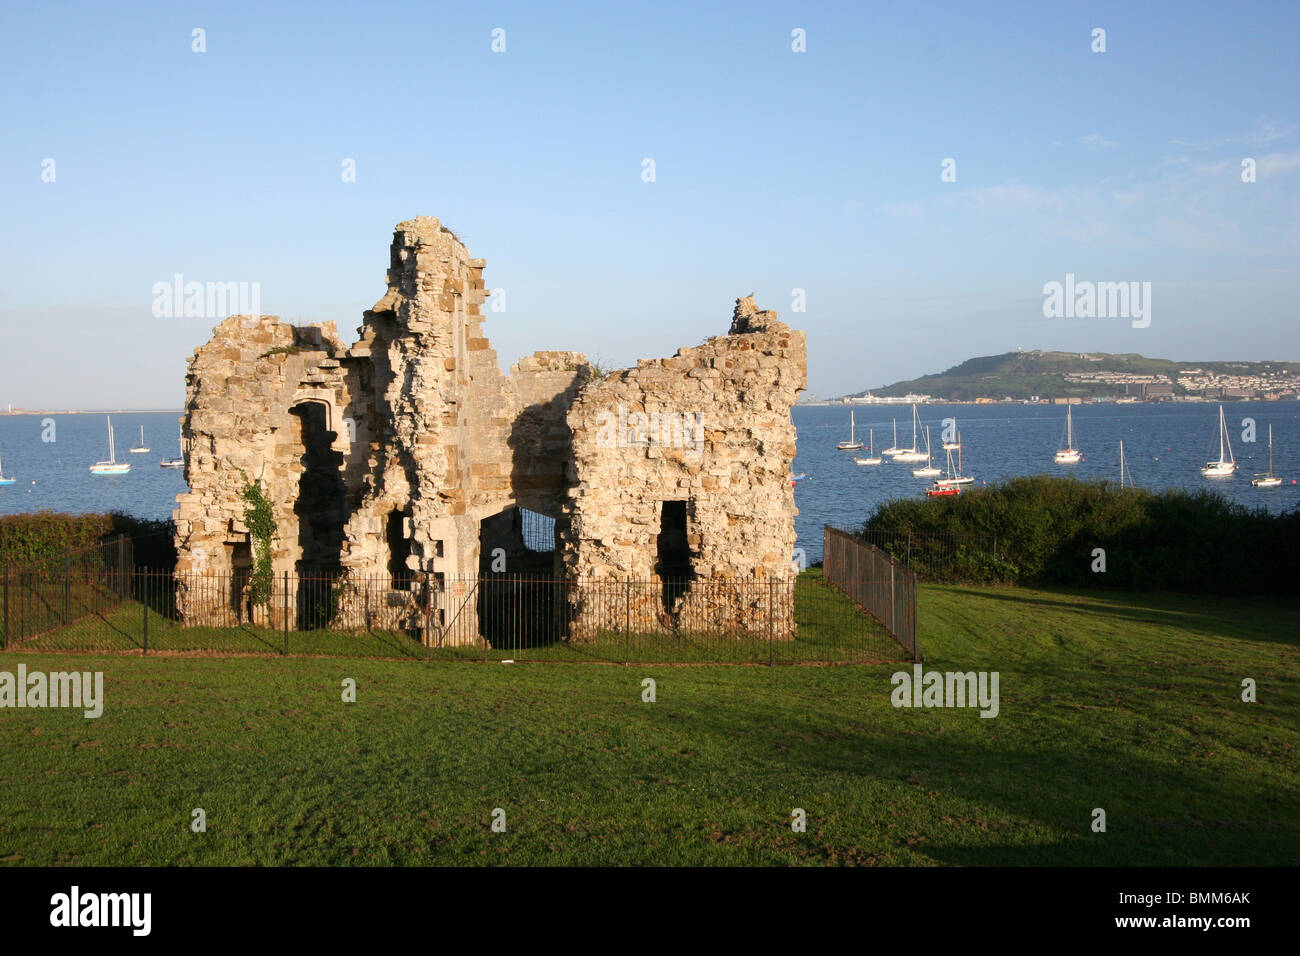 sandsfoot castle ruins overlooking portland harbour dorset coast england uk gb Stock Photo